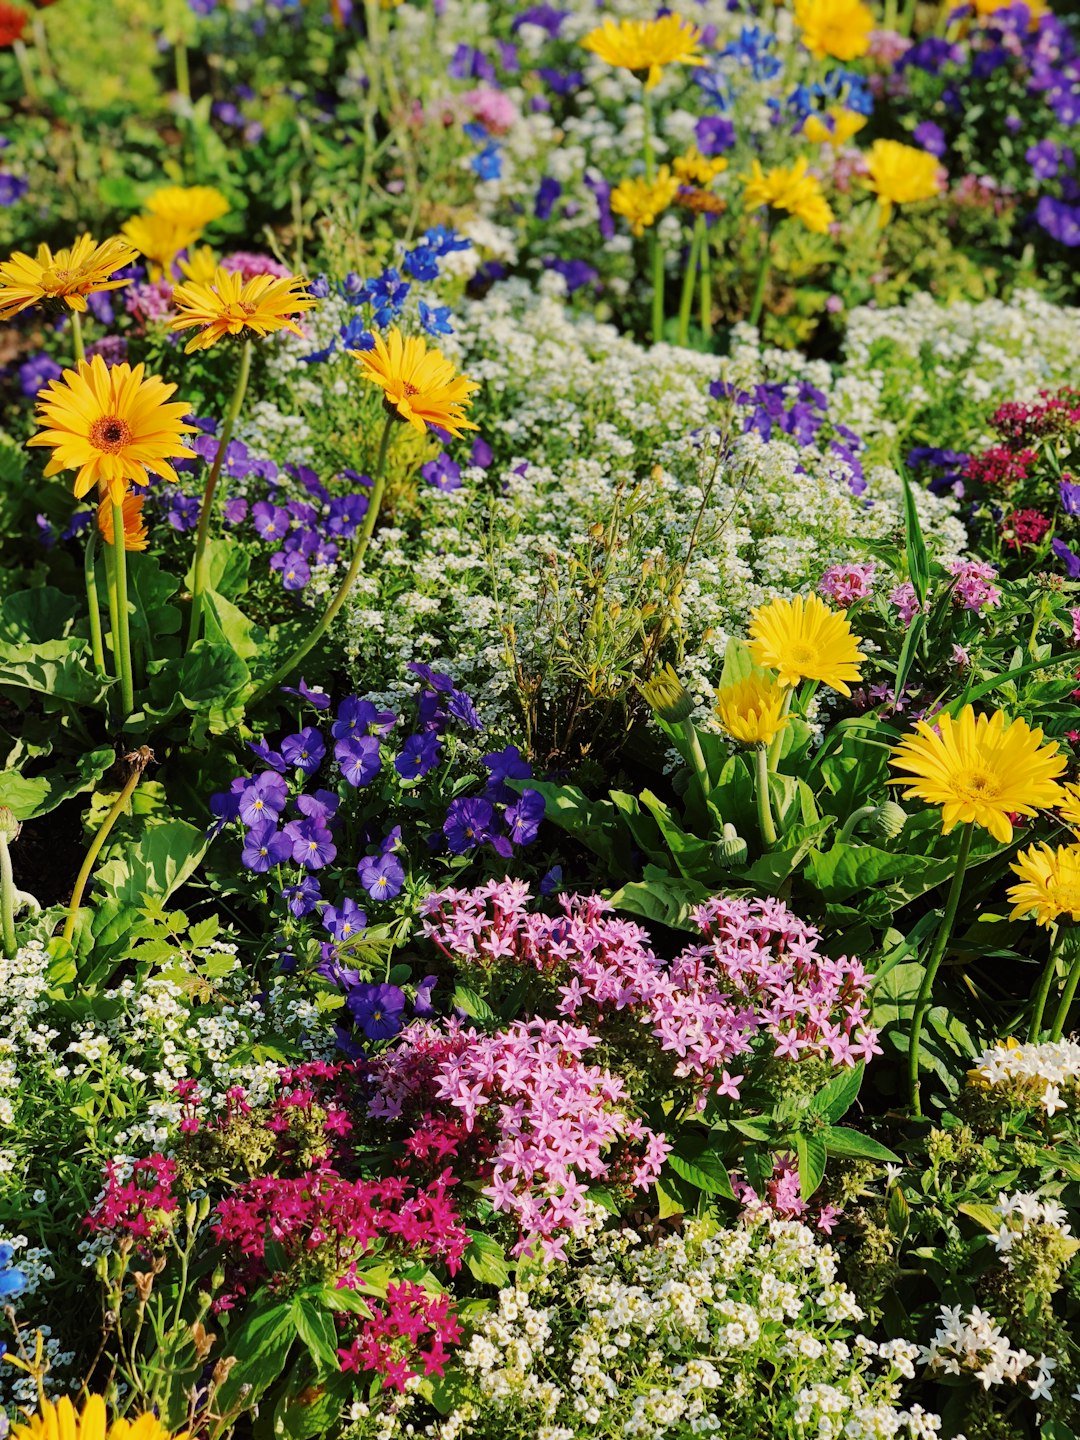 sunrose fertilizer, sunrose, flowers field